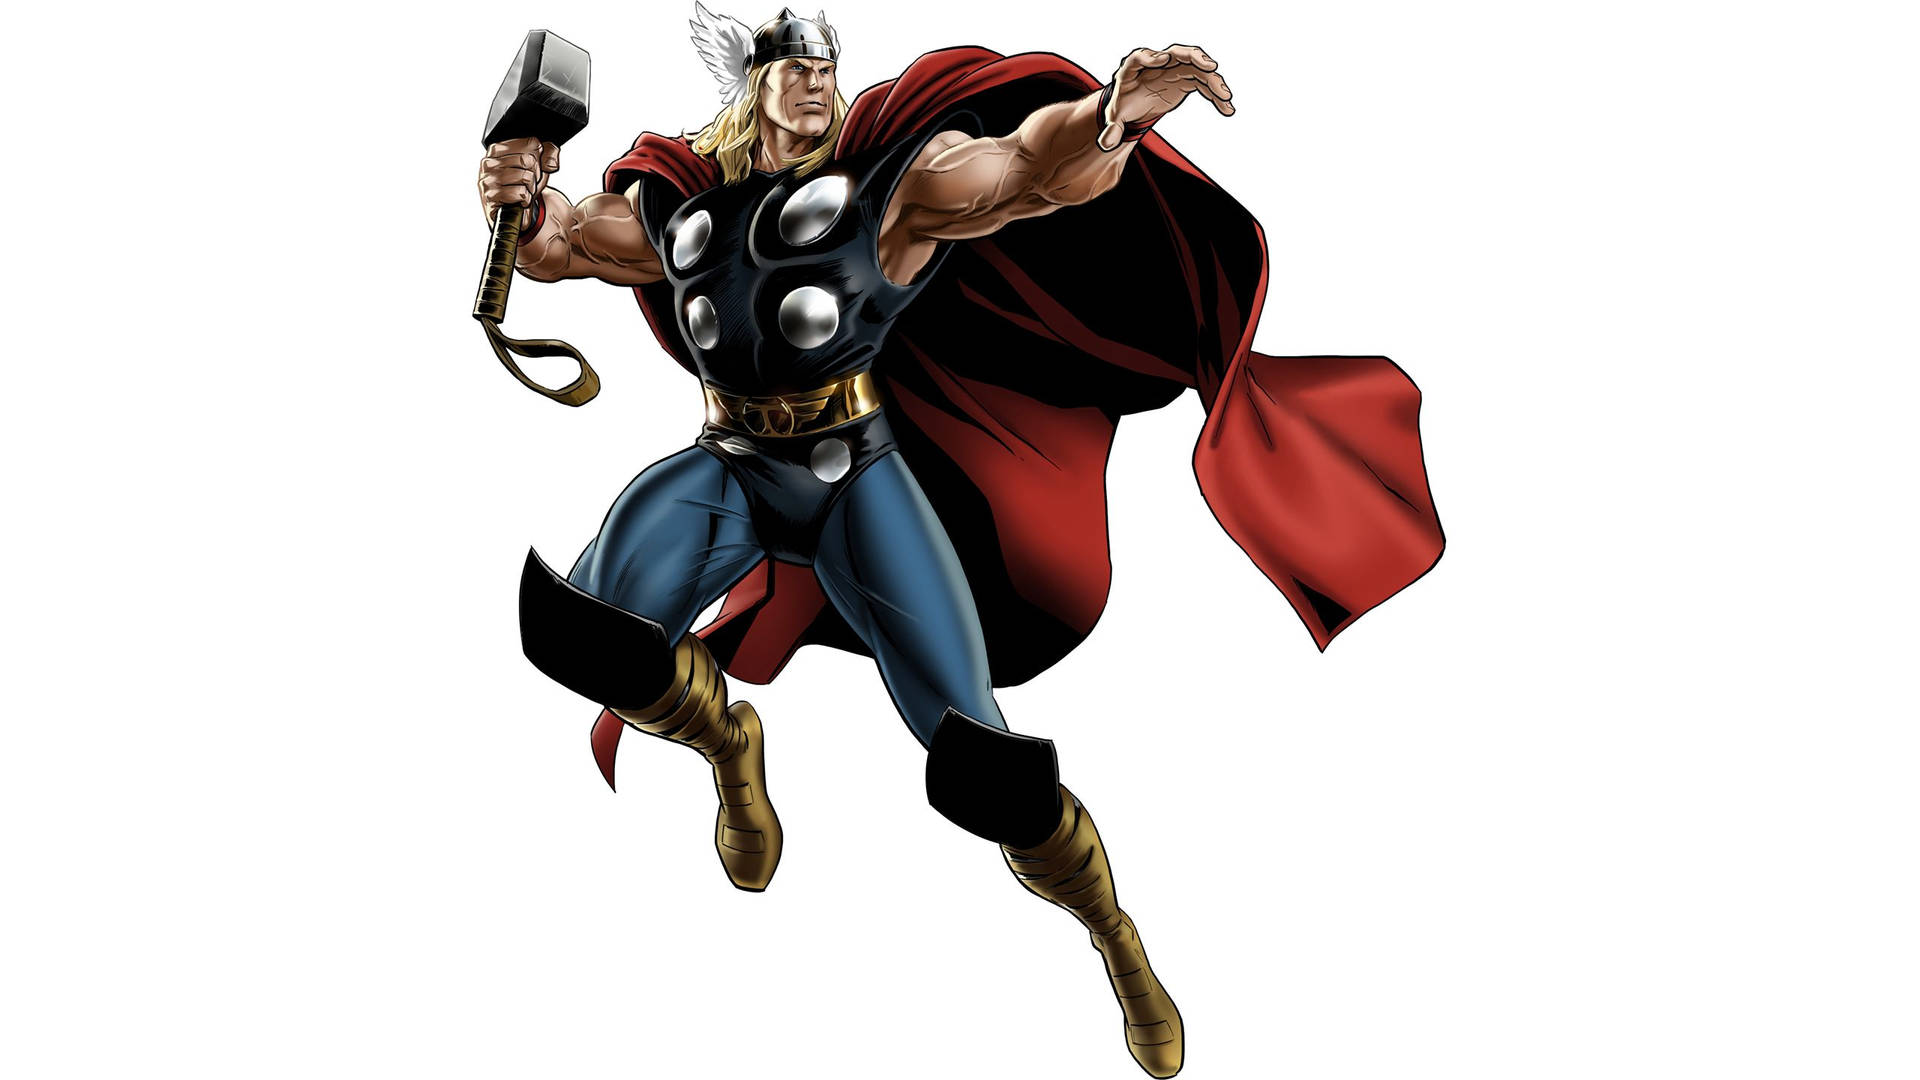 Animated Thor Superhero Marvel Comics Background